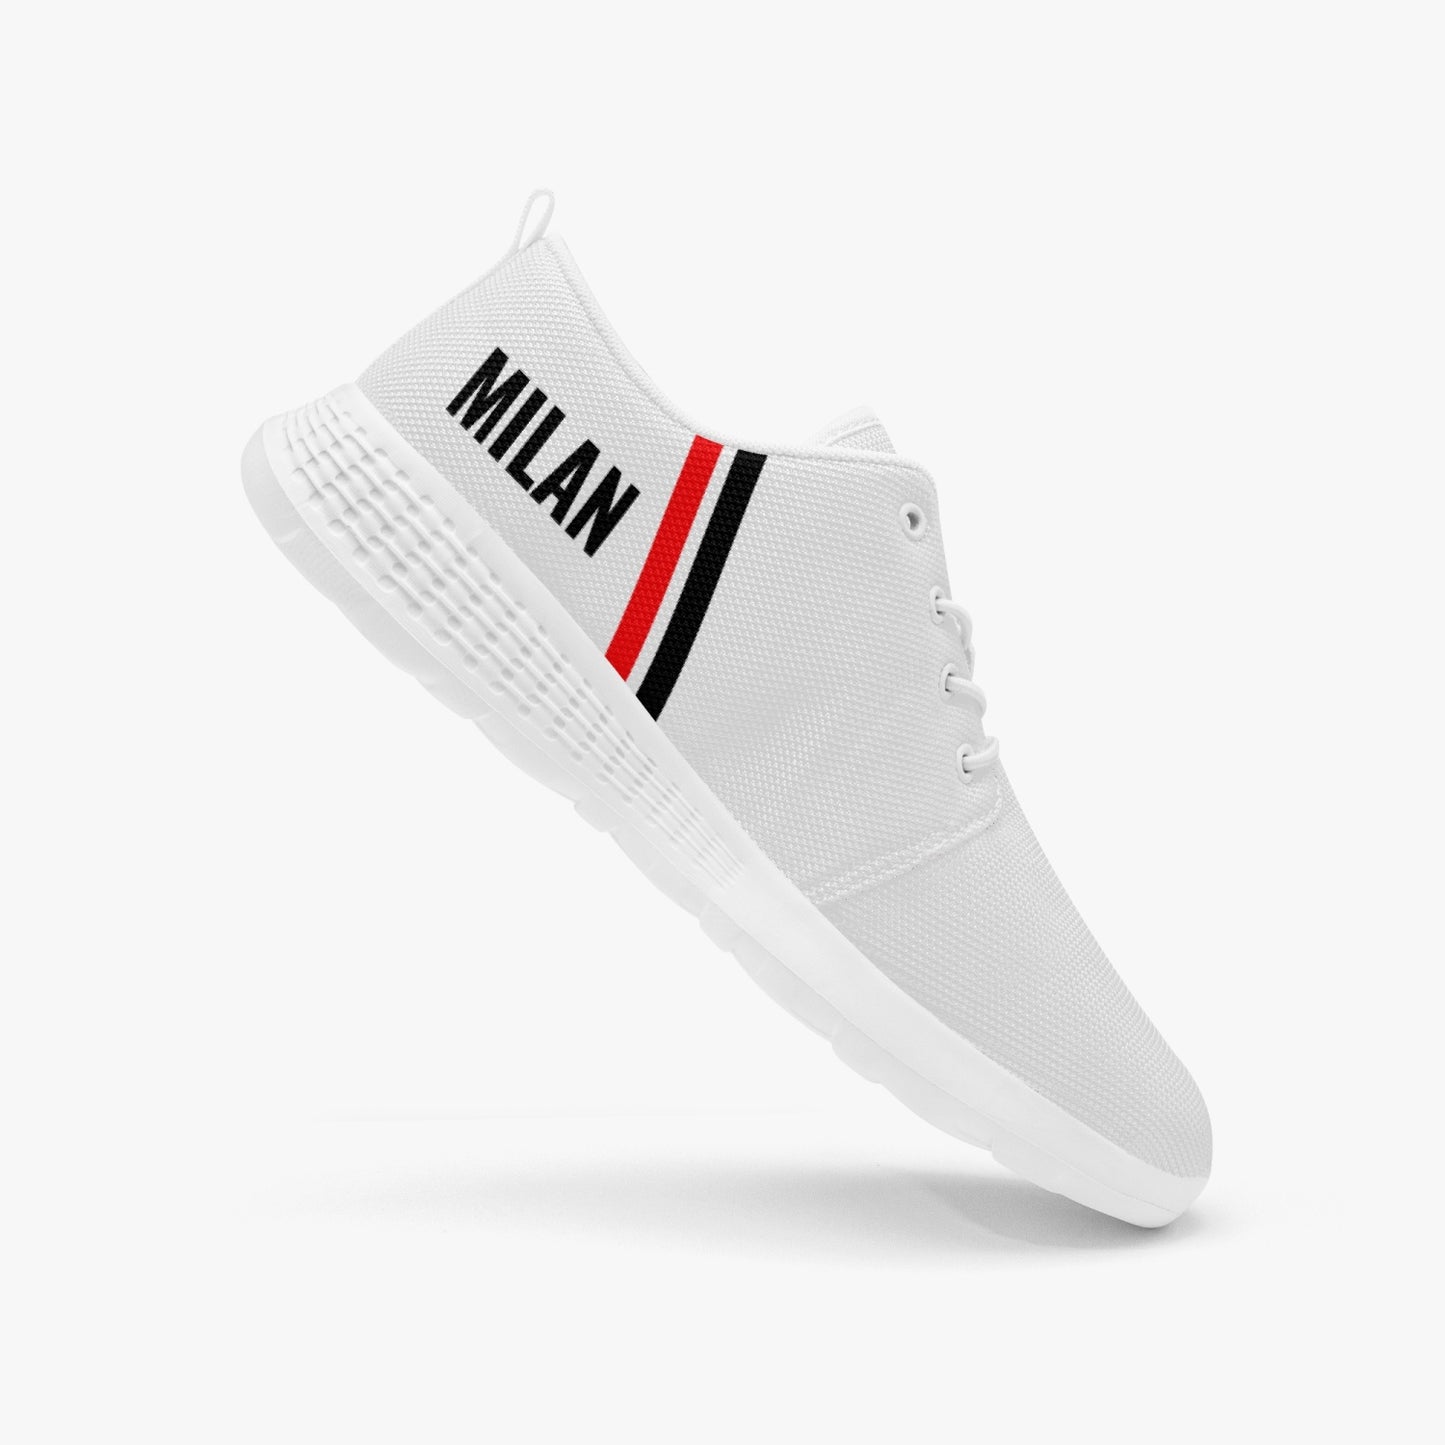 Milan Running Shoes - men's /women's sizes